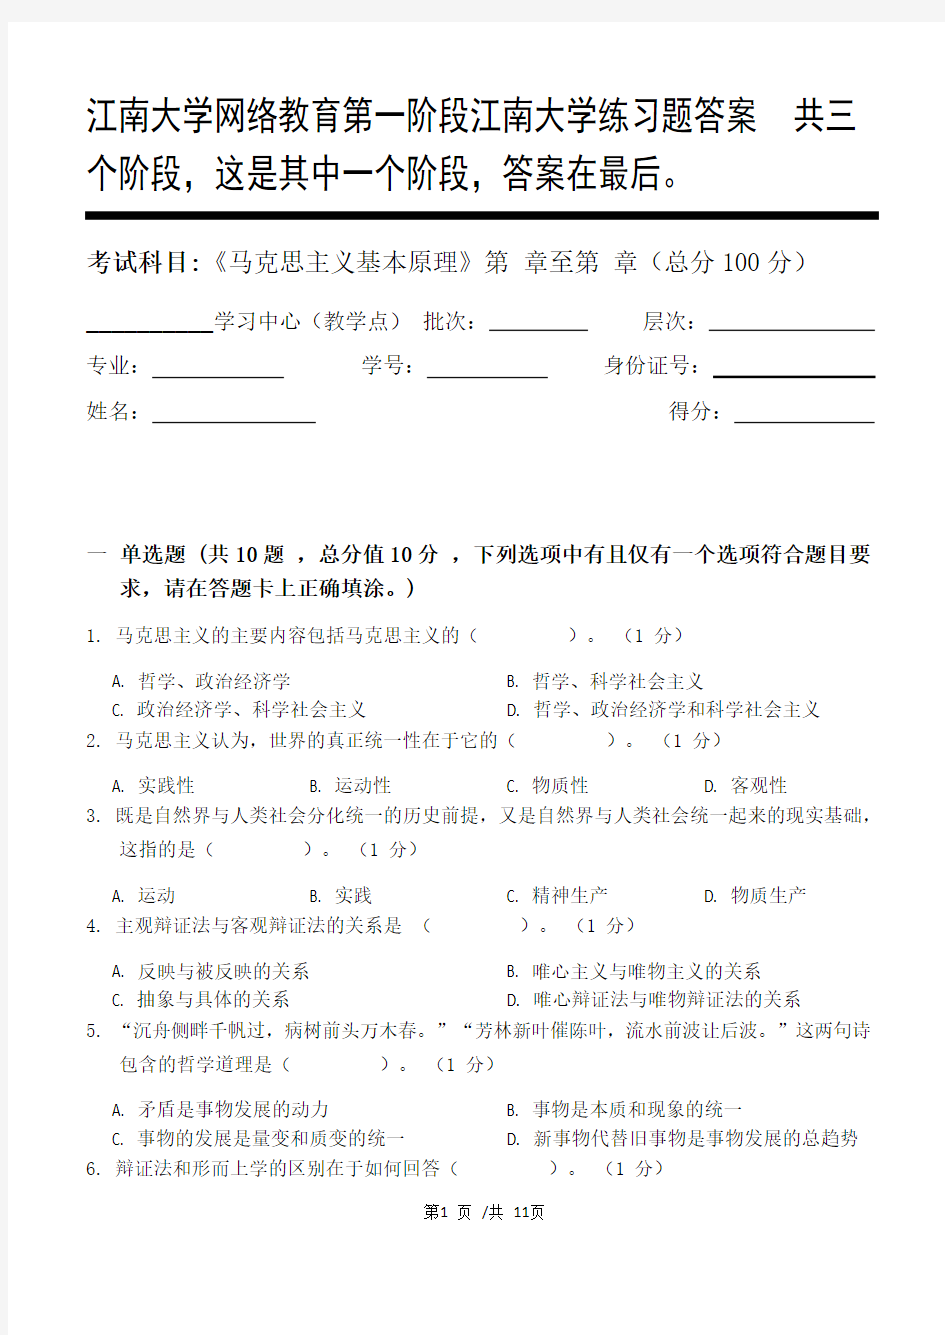 马克思主义基本原理第1阶段江南大学练习题答案  共三个阶段,这是其中一个阶段,答案在最后。